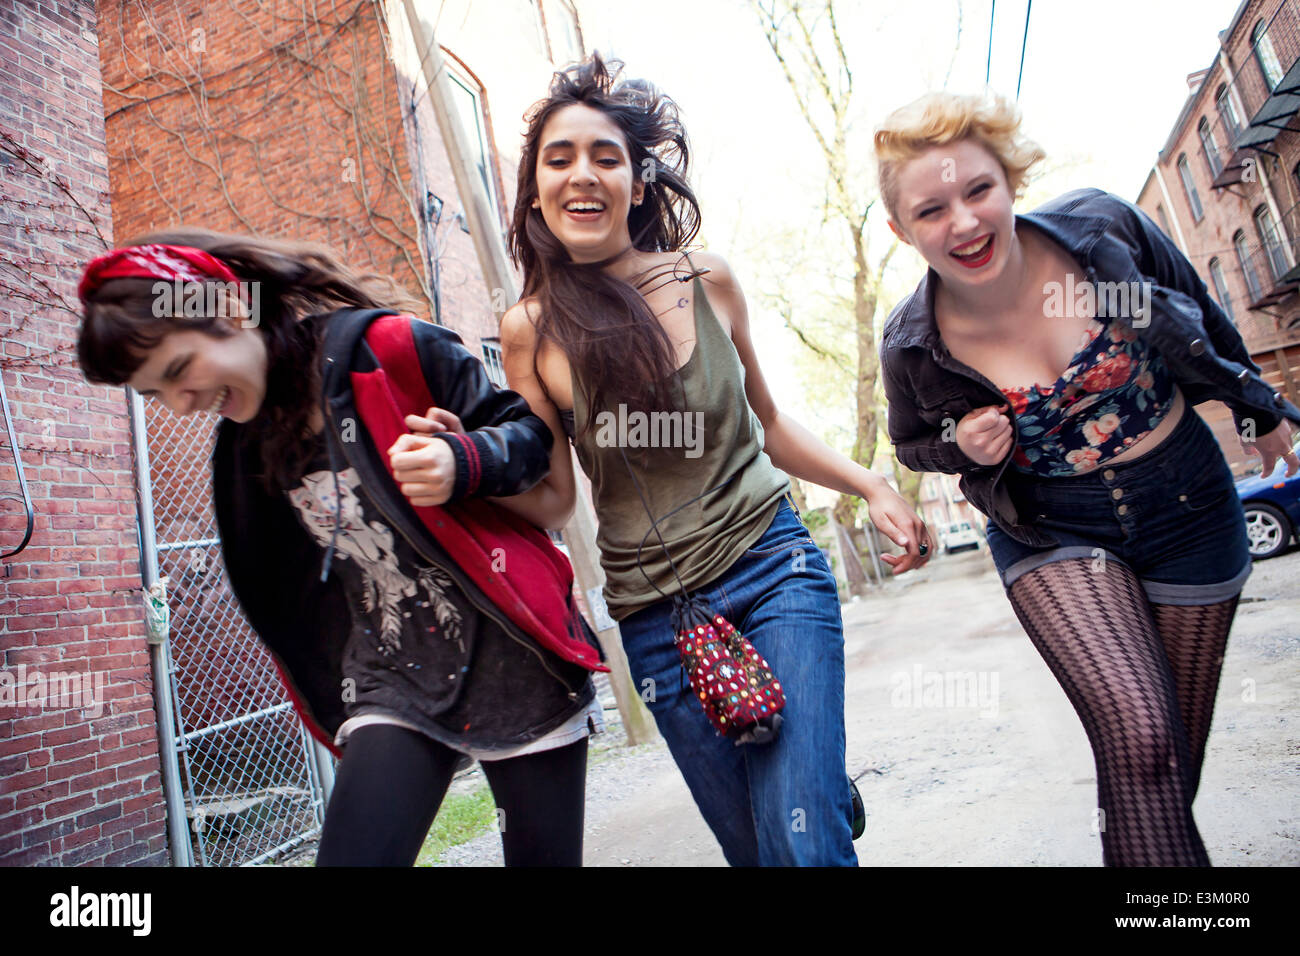 Three friends running, Massachusetts, USA Stock Photo